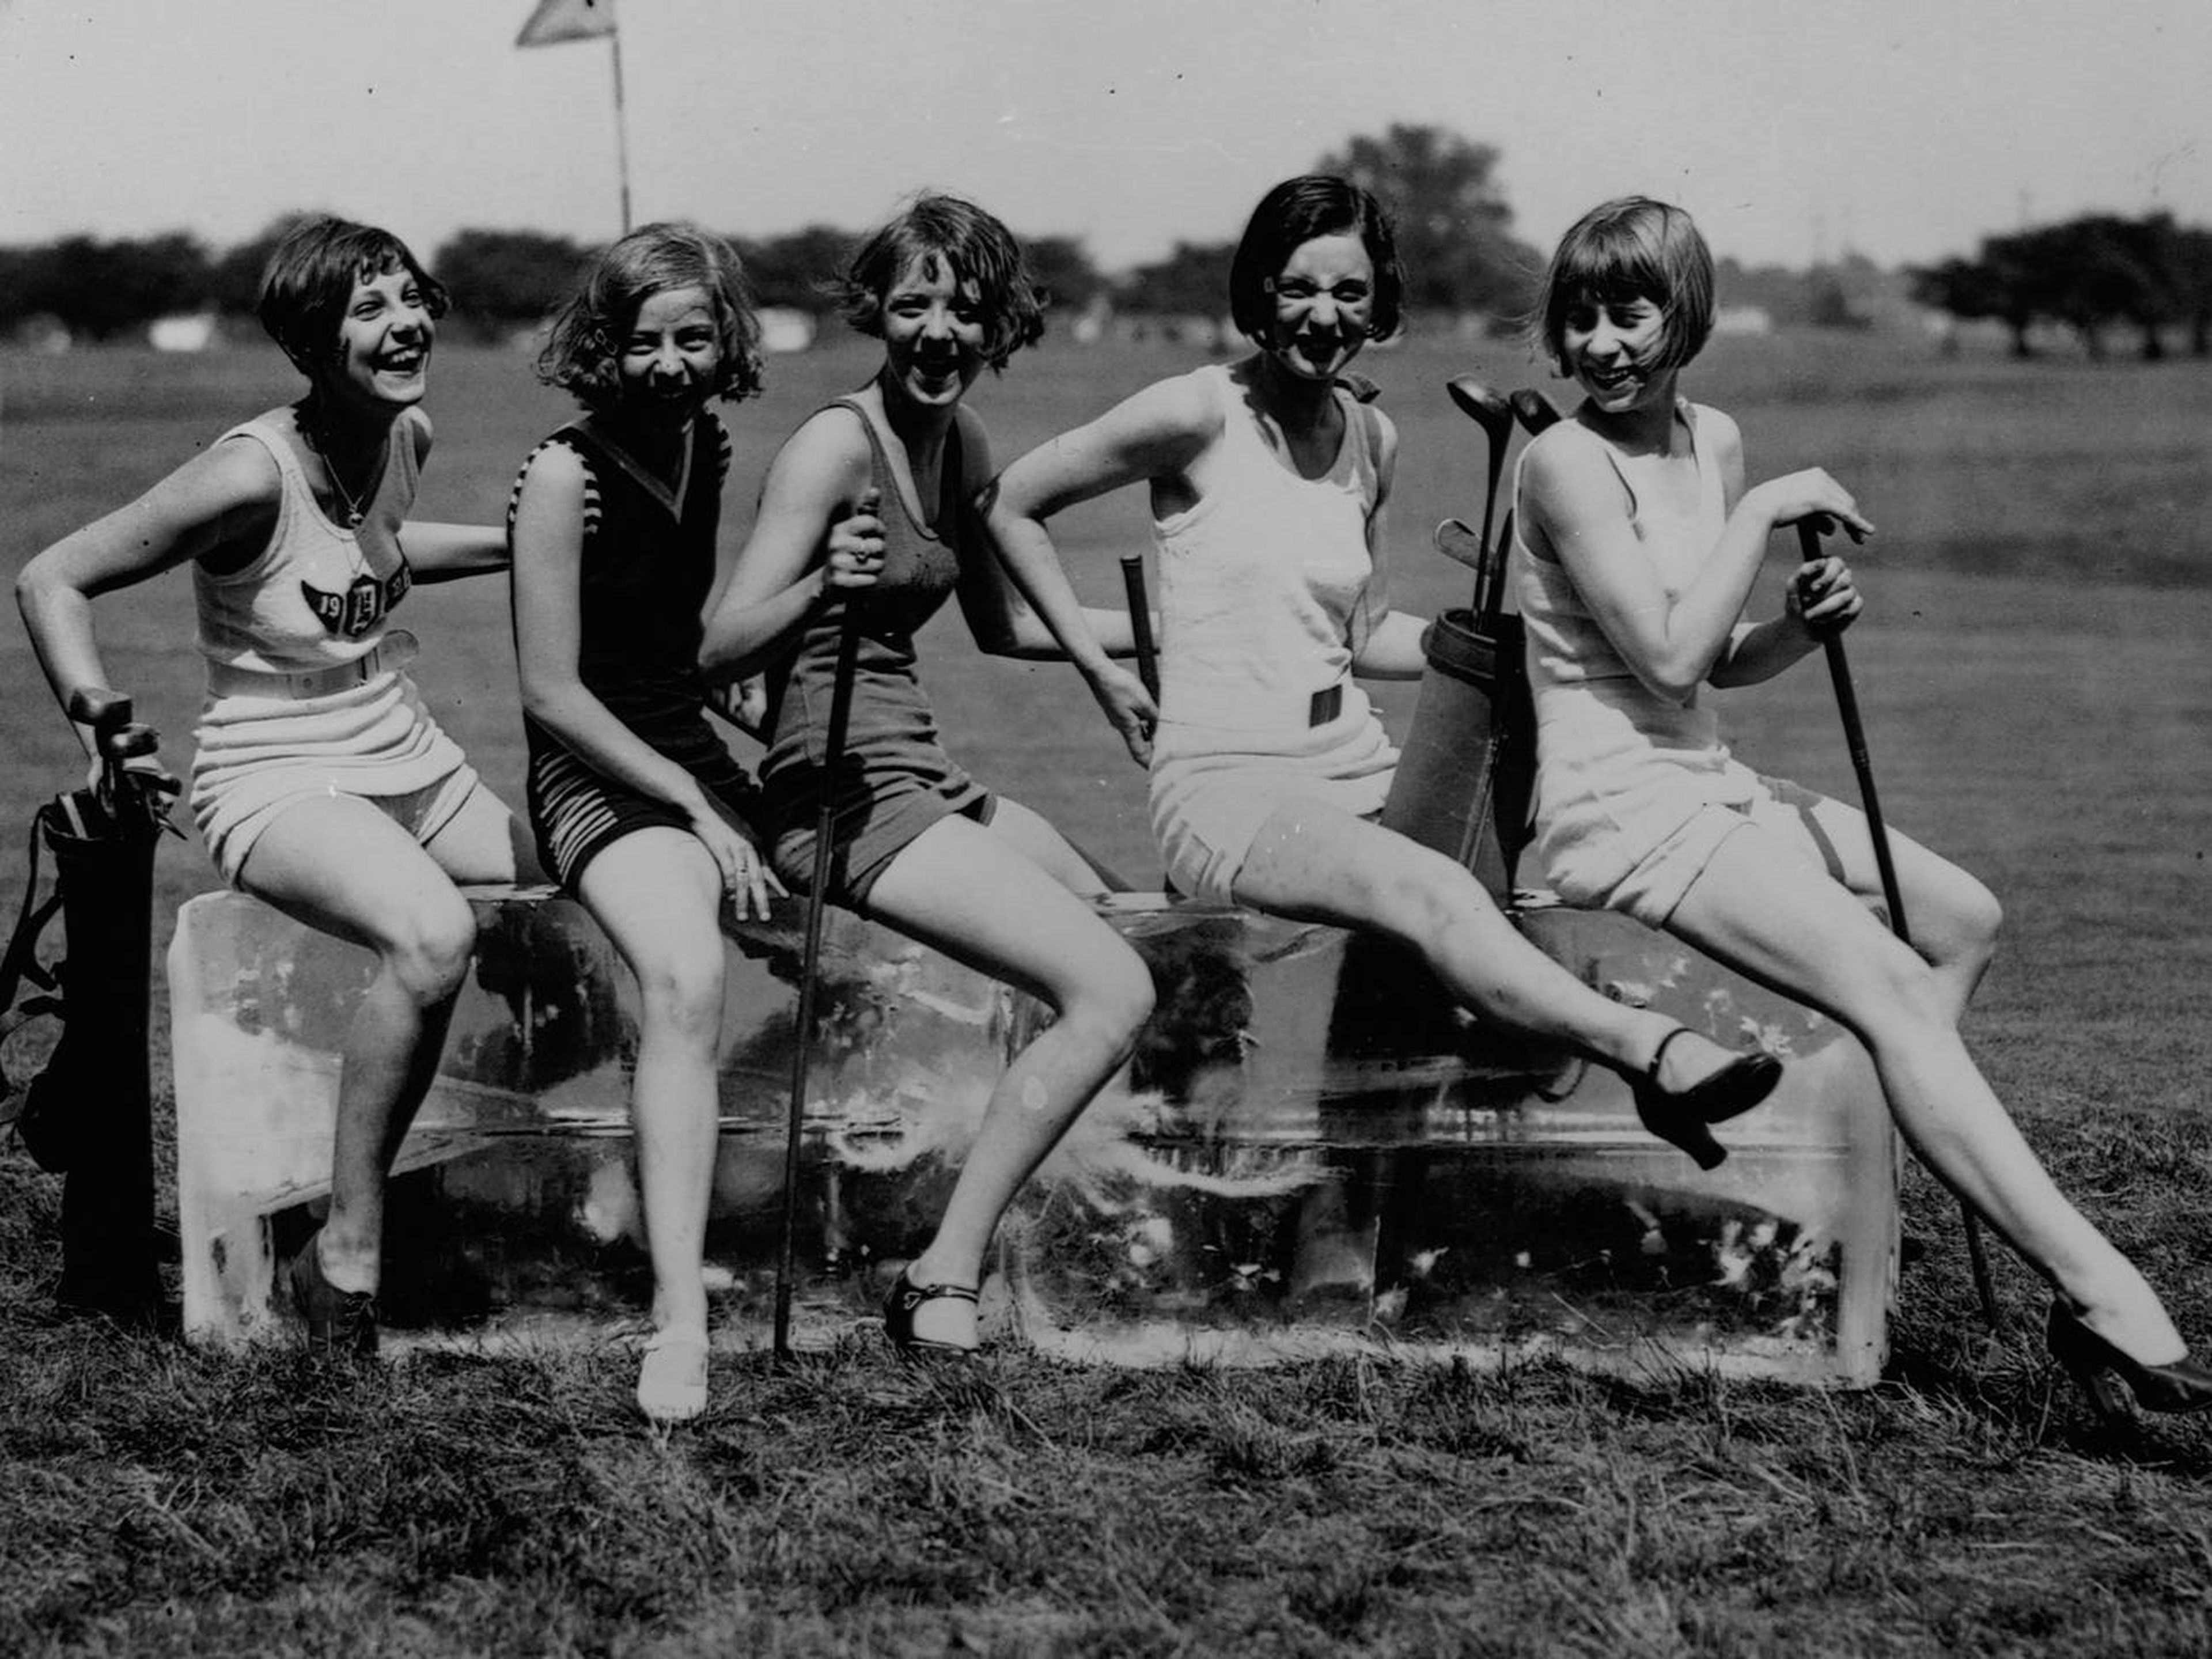 Un grupo de mujeres en un campo de golf, alrededor de 1920.